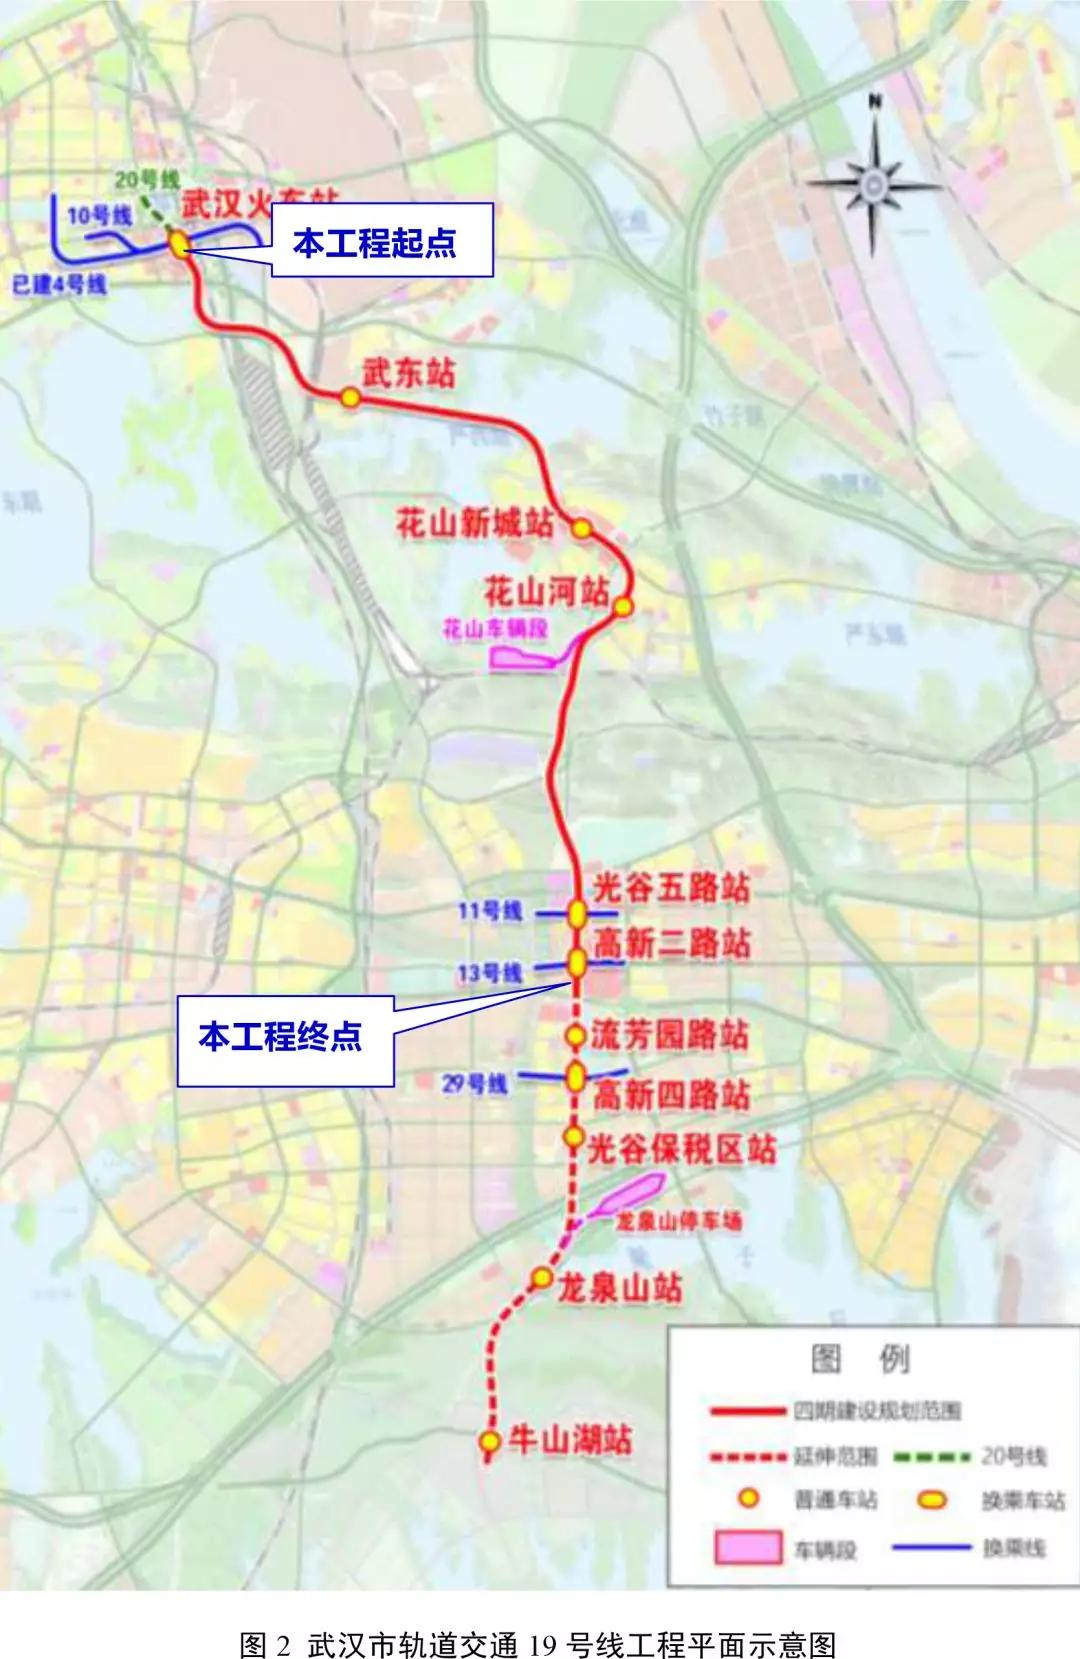 武汉地铁规划图 武汉2025年地铁规划图